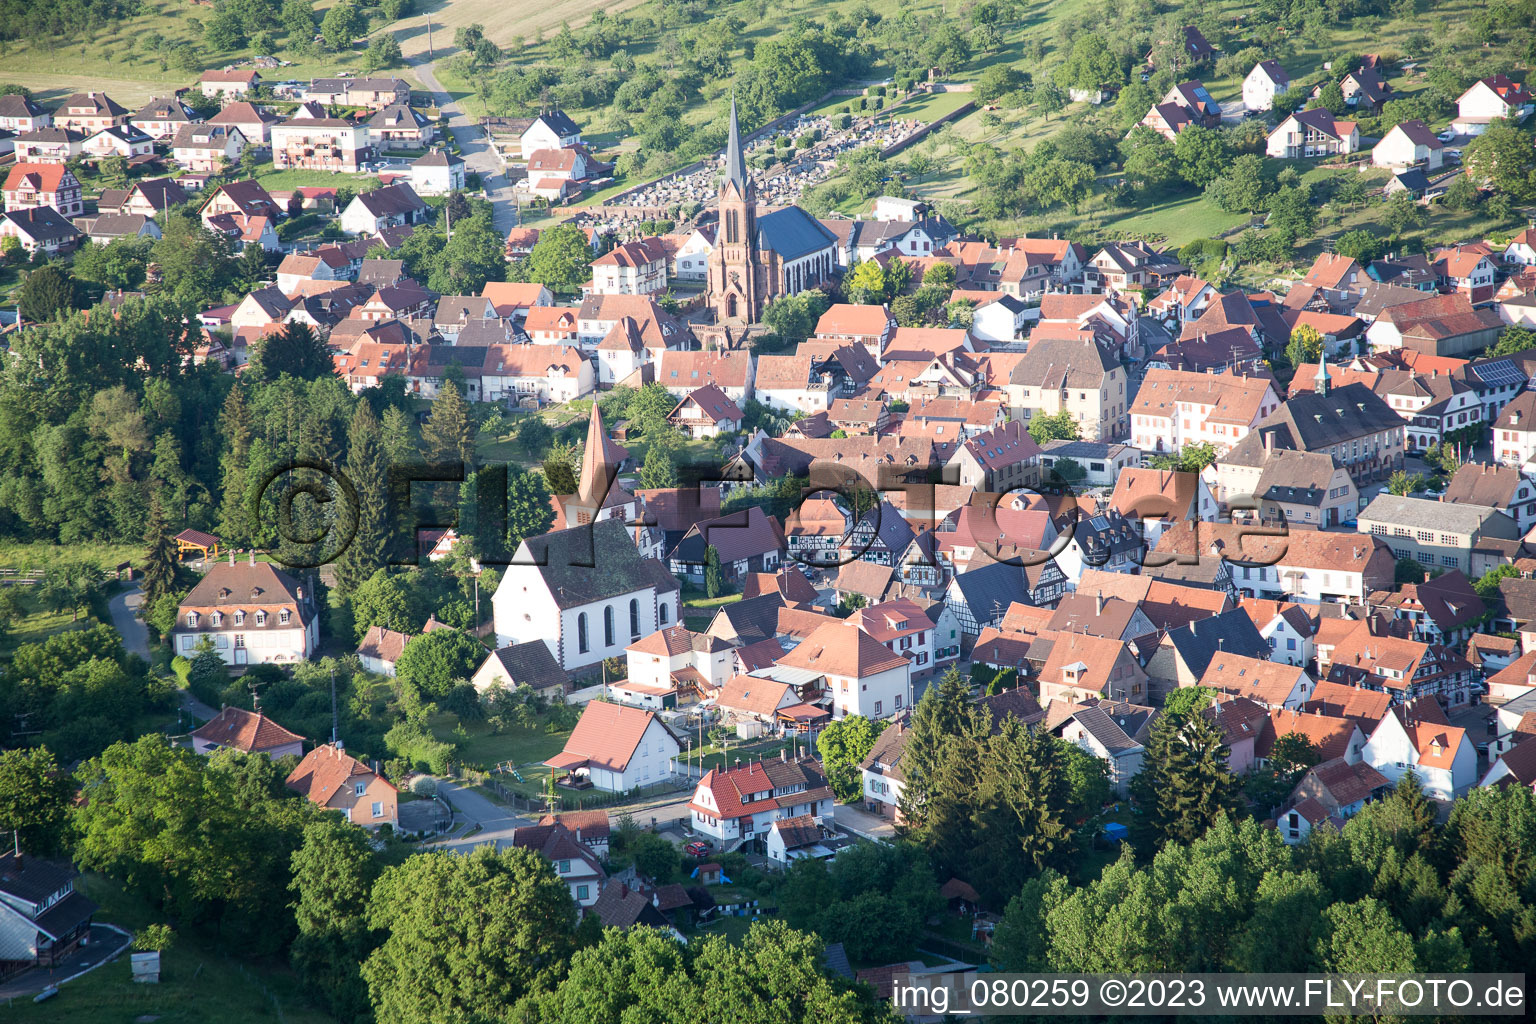 Lembach im Bundesland Bas-Rhin, Frankreich von der Drohne aus gesehen